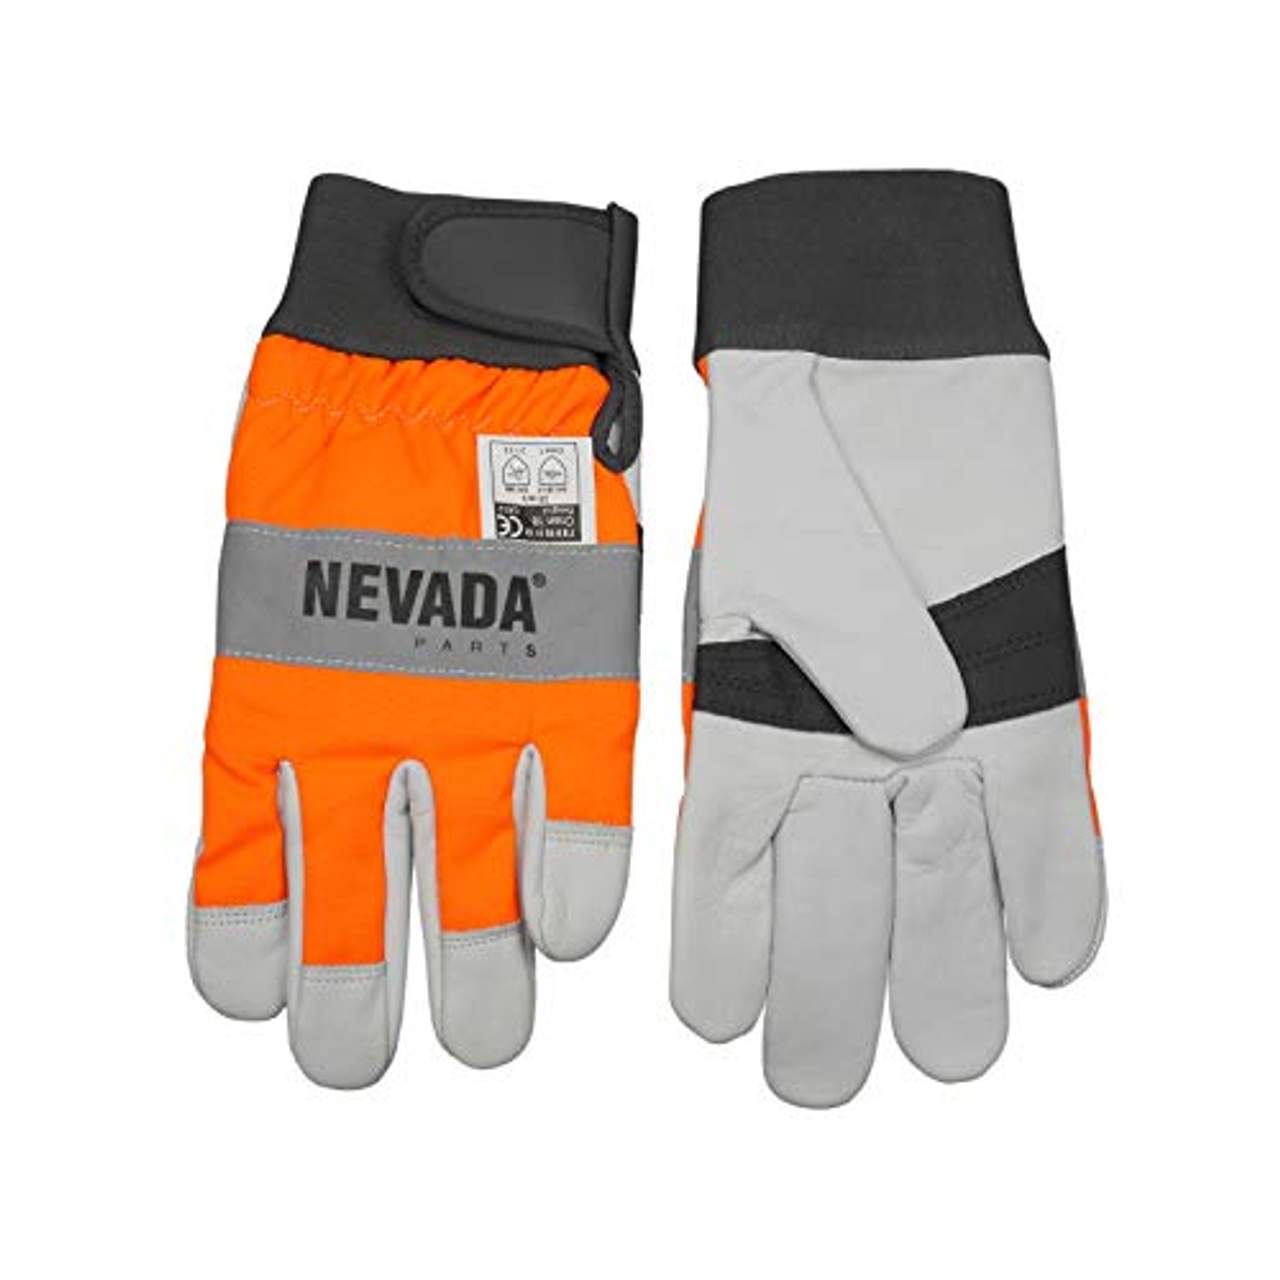 Nevada Schnittschutz Handschuhe Größe XL